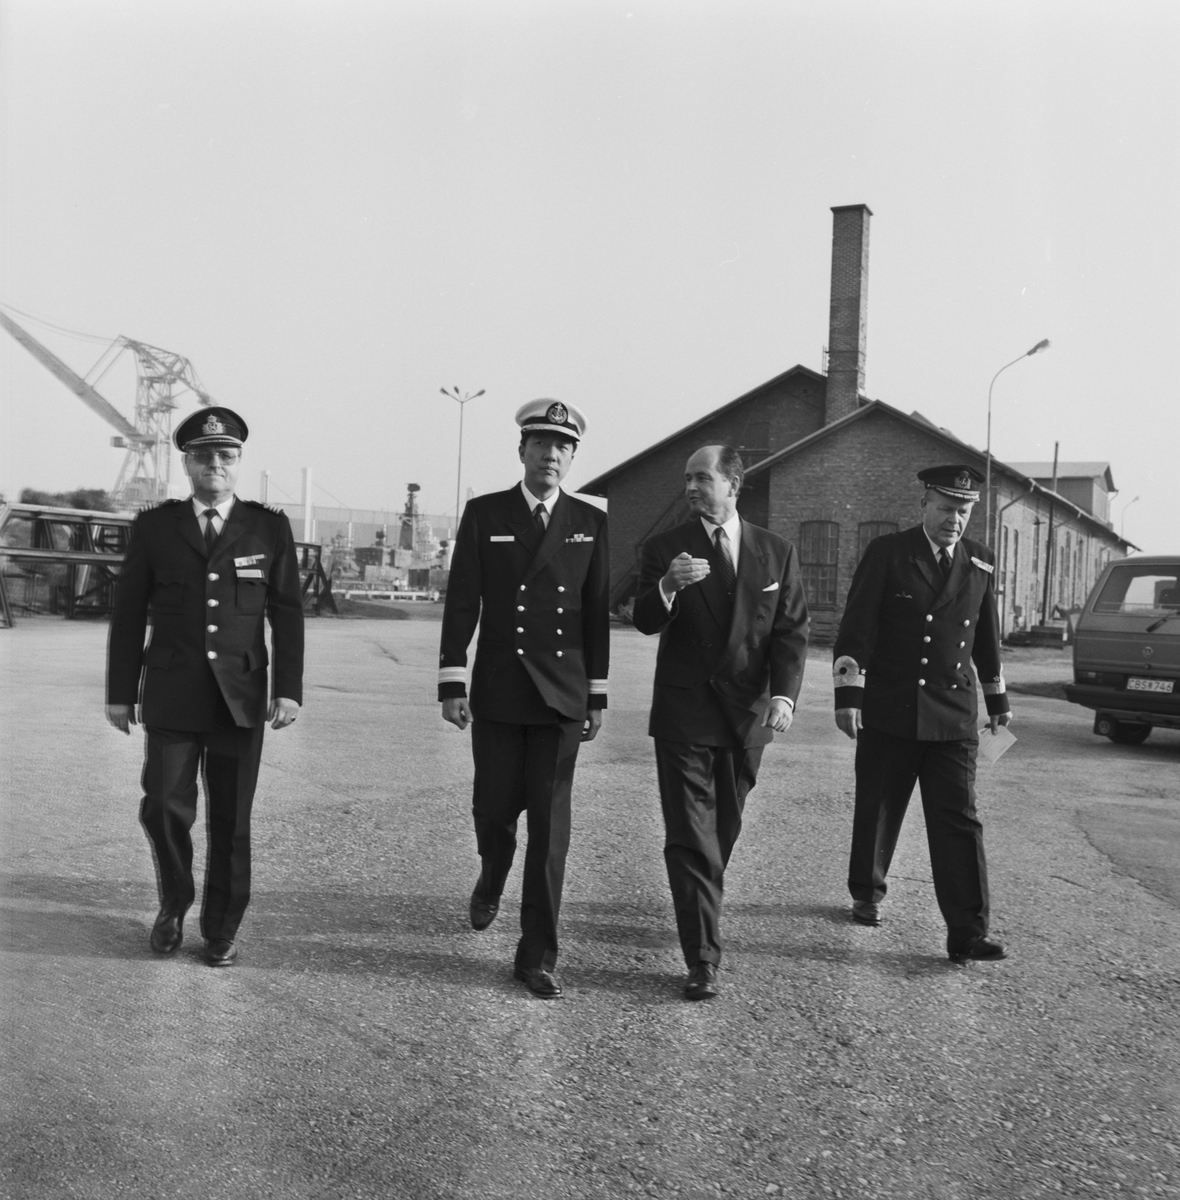 Varvschefen tar en promenad med den singaporianske marinchefen och två höga sjöofficerare.